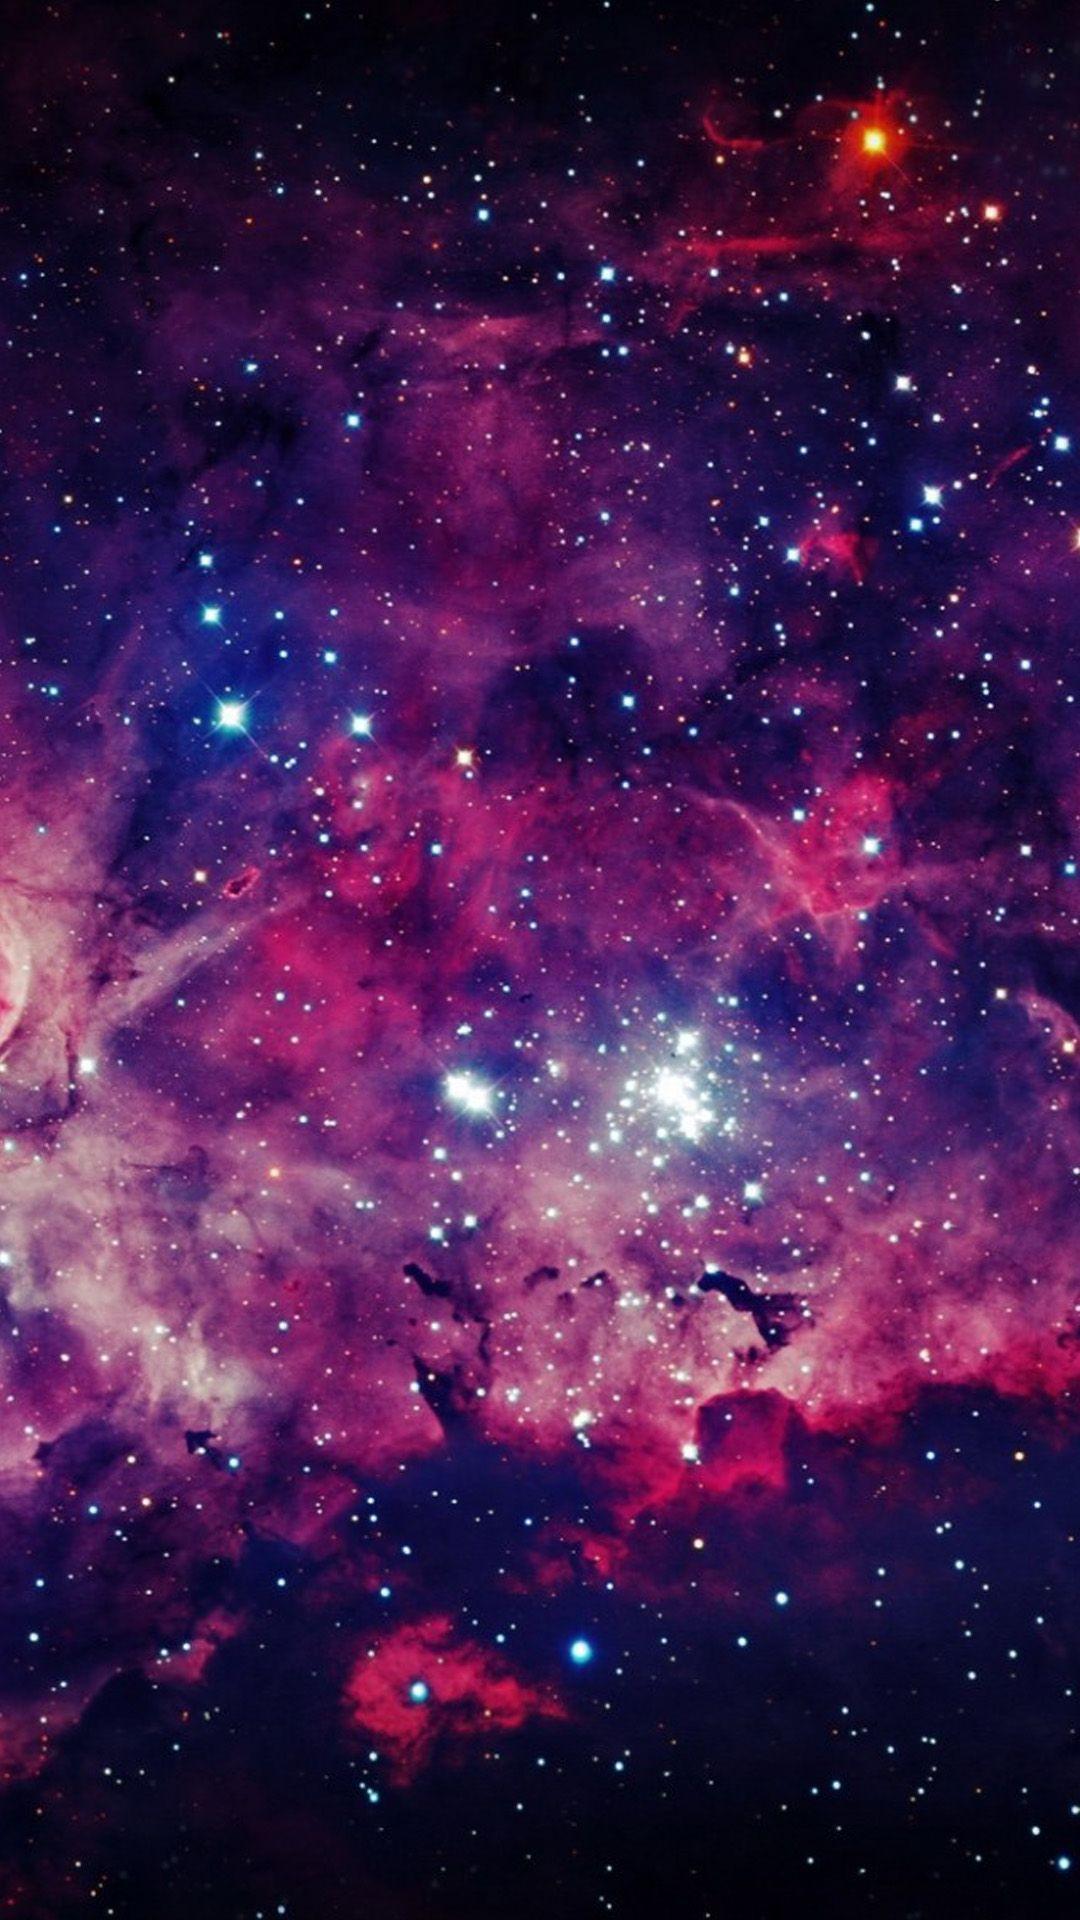 Bạn mong muốn tìm kiếm một trải nghiệm tuyệt vời khi sử dụng điện thoại? Hãy truy cập vào hình nền điện thoại thiên hà của chúng tôi! Với những hình ảnh đẹp mắt của các vì sao và hành tinh, bạn sẽ cảm thấy như mình đang du hành trong không gian vô tận.